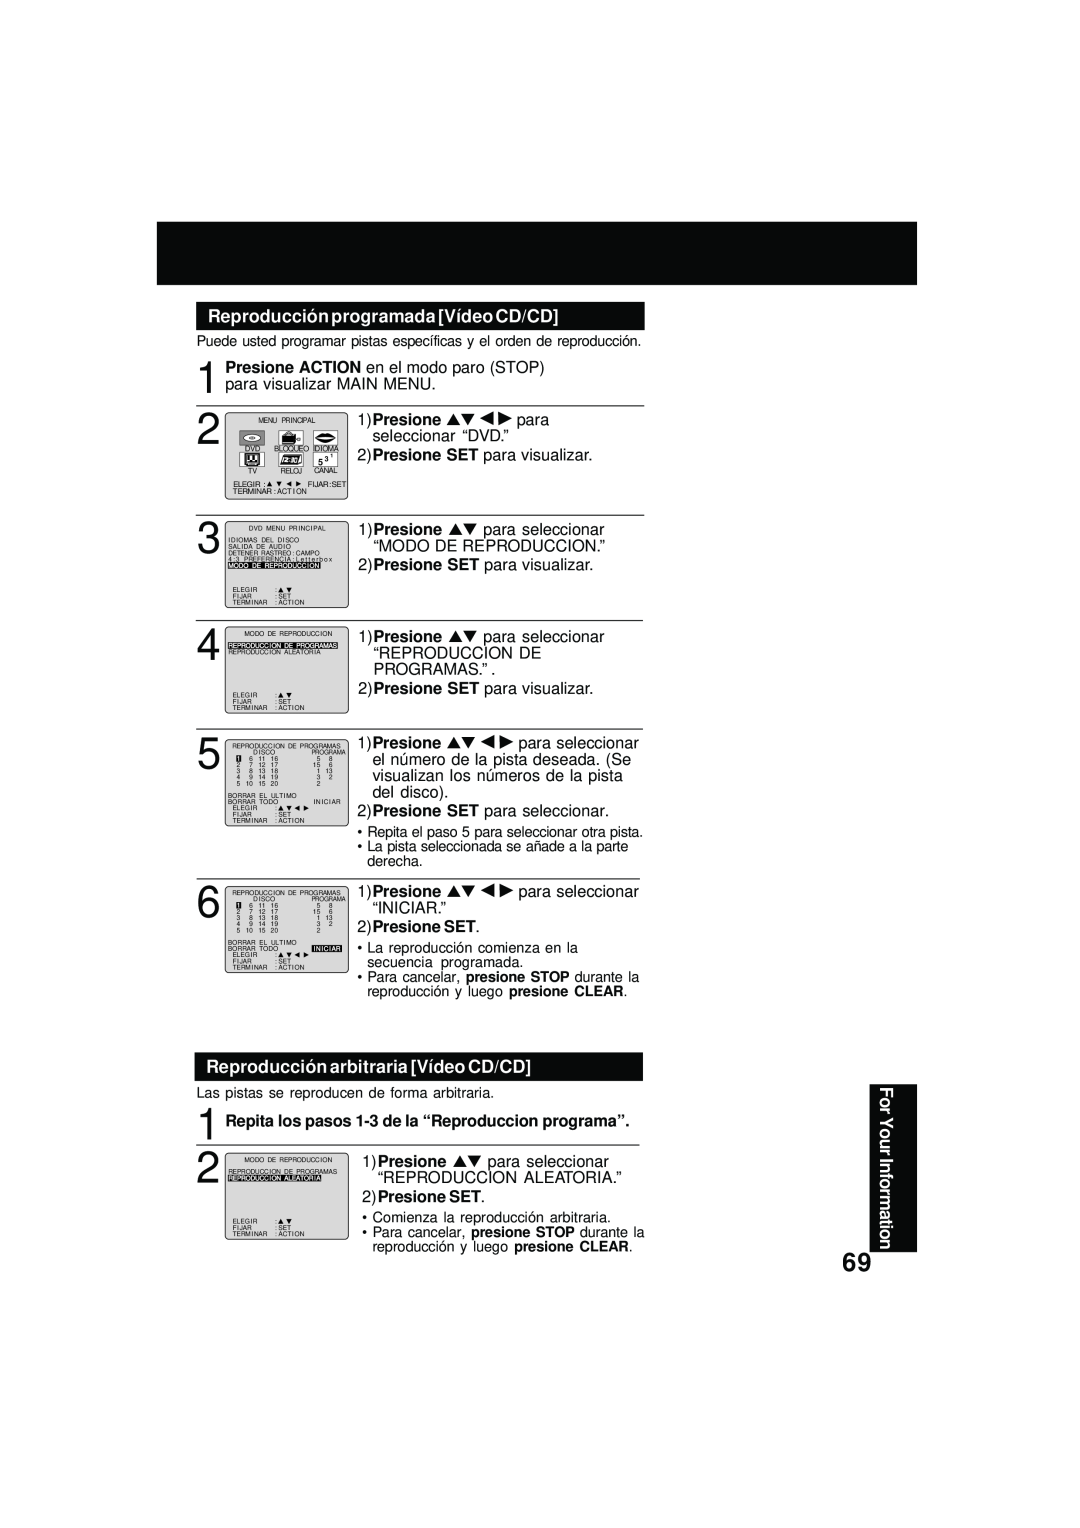 Panasonic PV DM2092 Reproducción programada Vídeo CD/CD, Reproducción arbitraria Vídeo CD/CD, 1Presione, 2Presione SET 